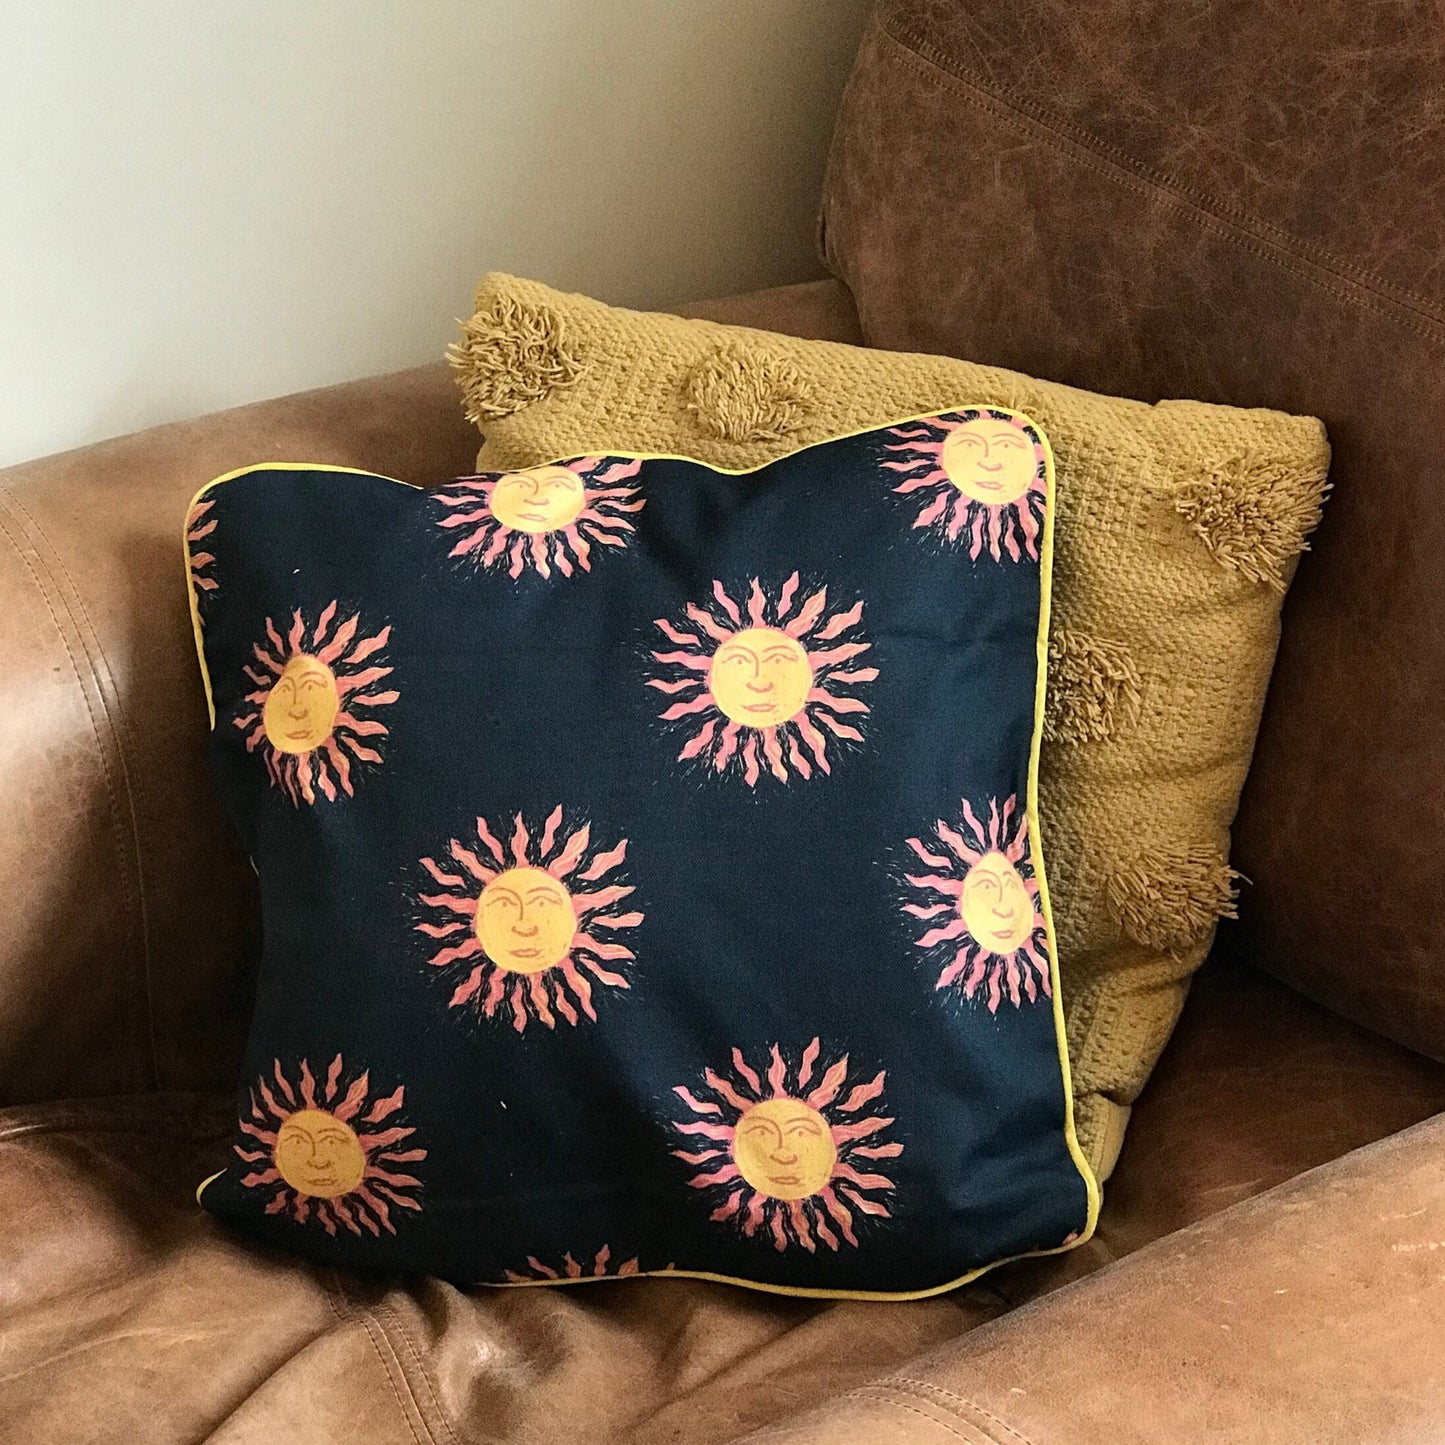 The Sun Lino Print Cushion